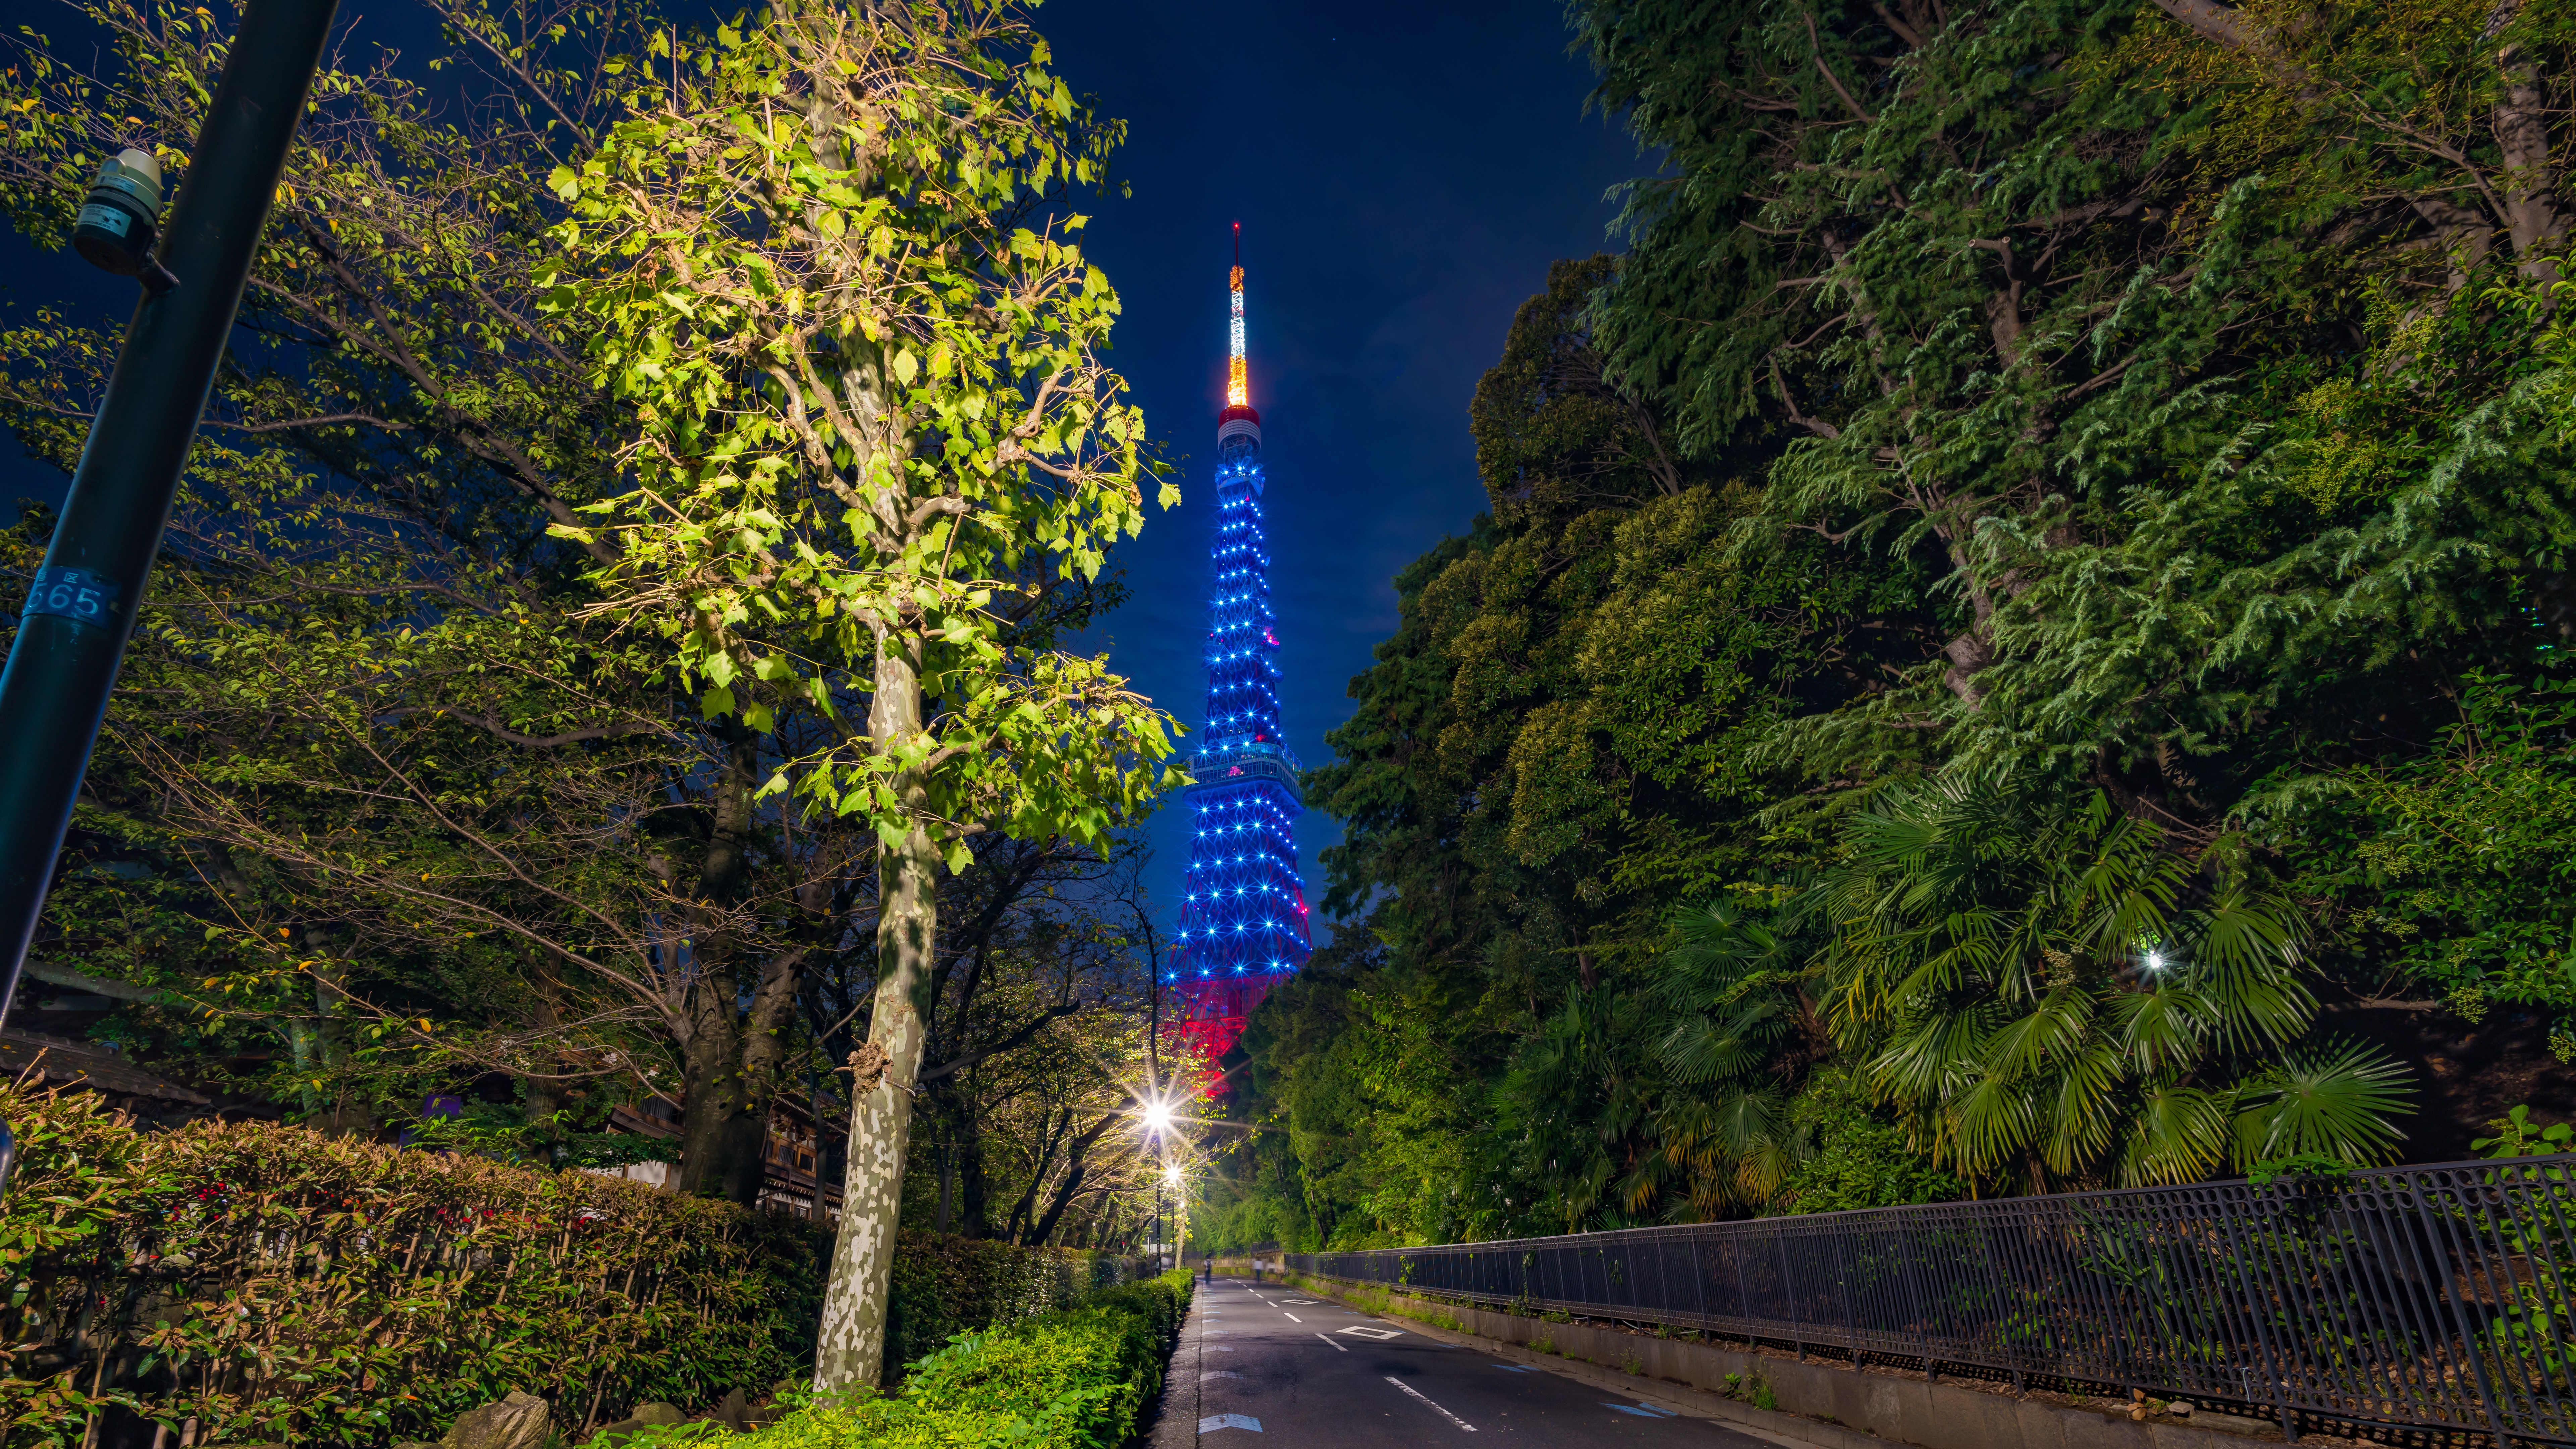 Man Made Tokyo Tower 8k Ultra HD Wallpaper